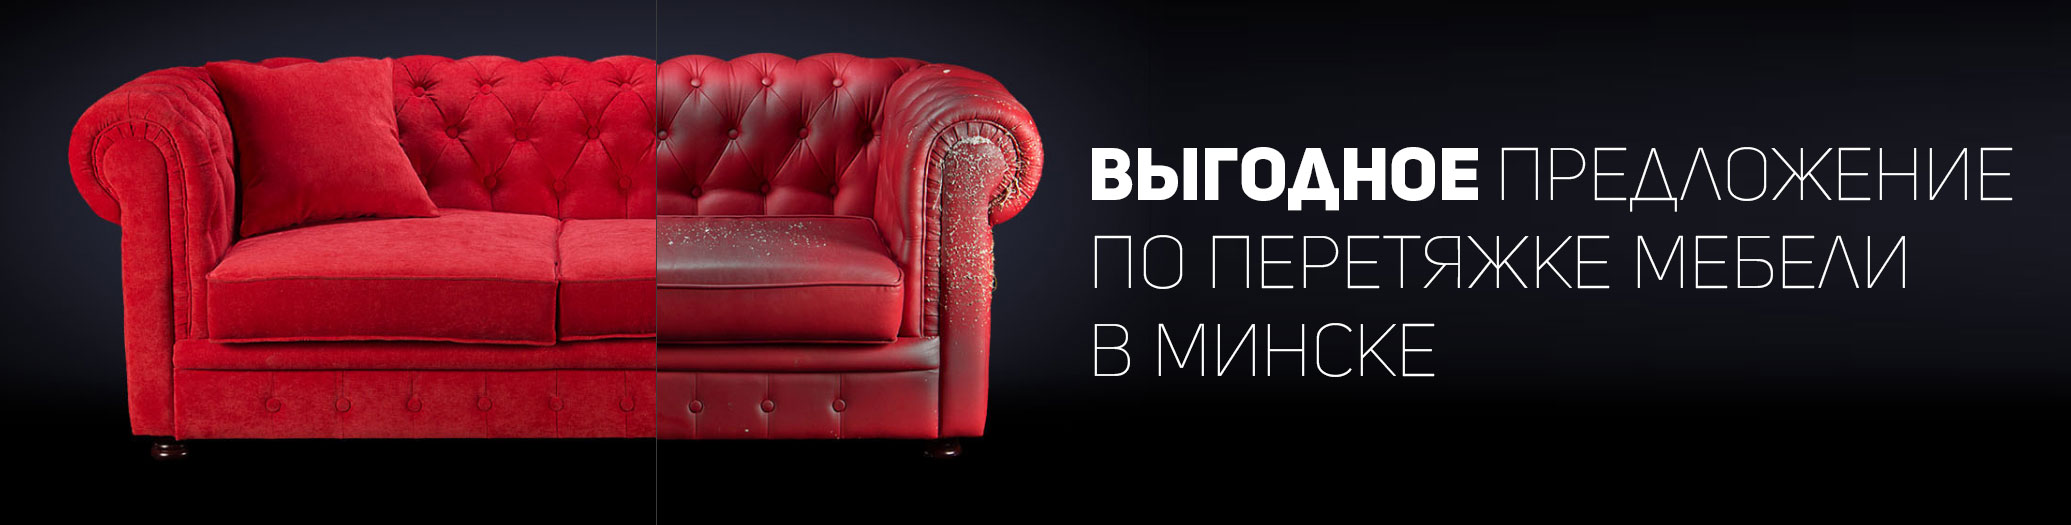 Реклама на обивку мебели